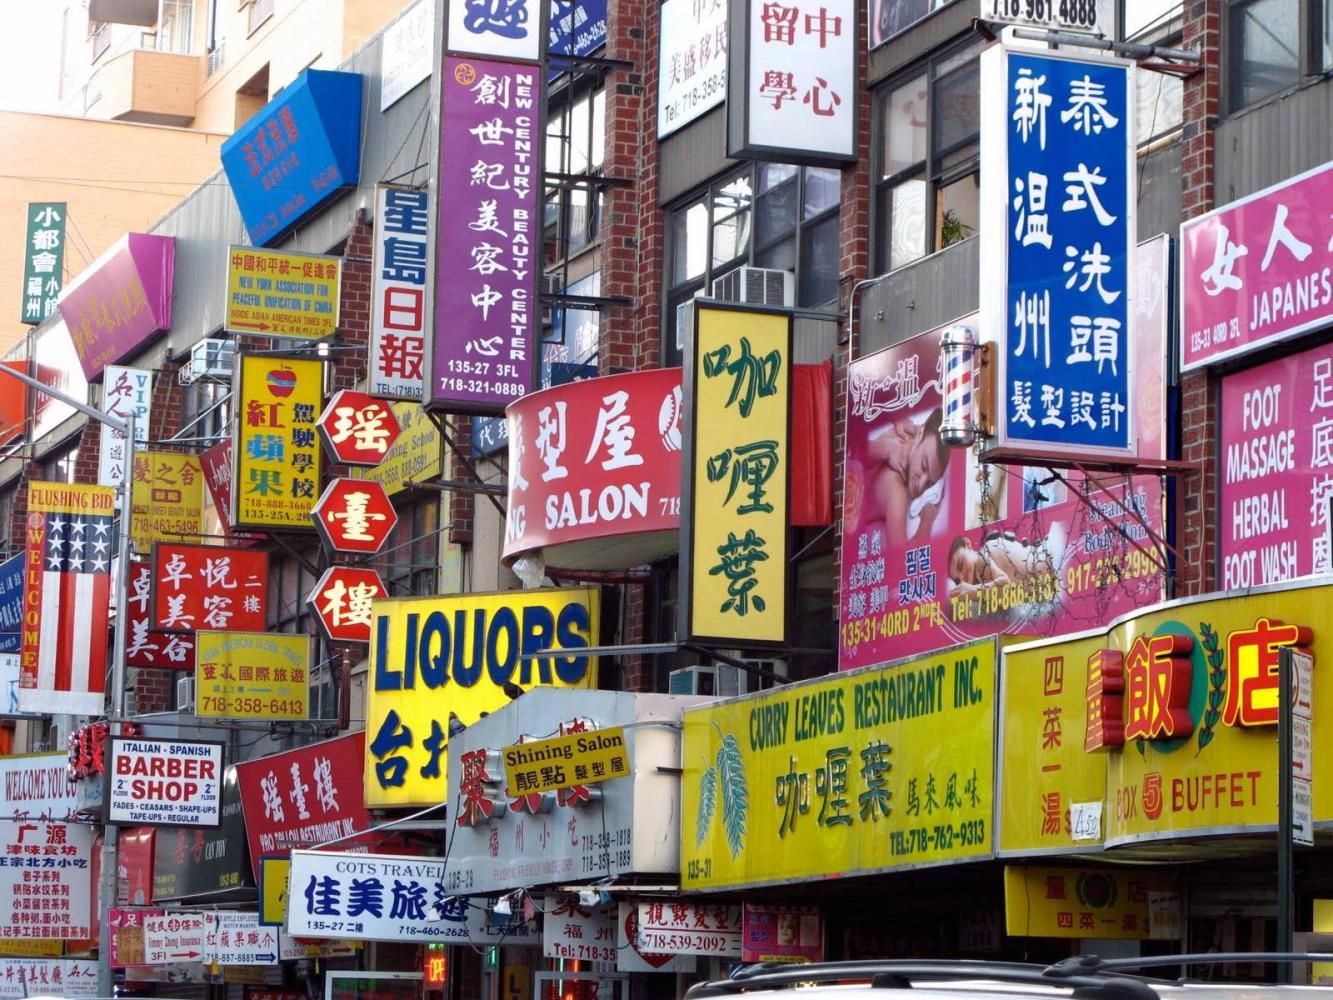 美国纽约唐人街,中文招牌随处可见,误以为在中国